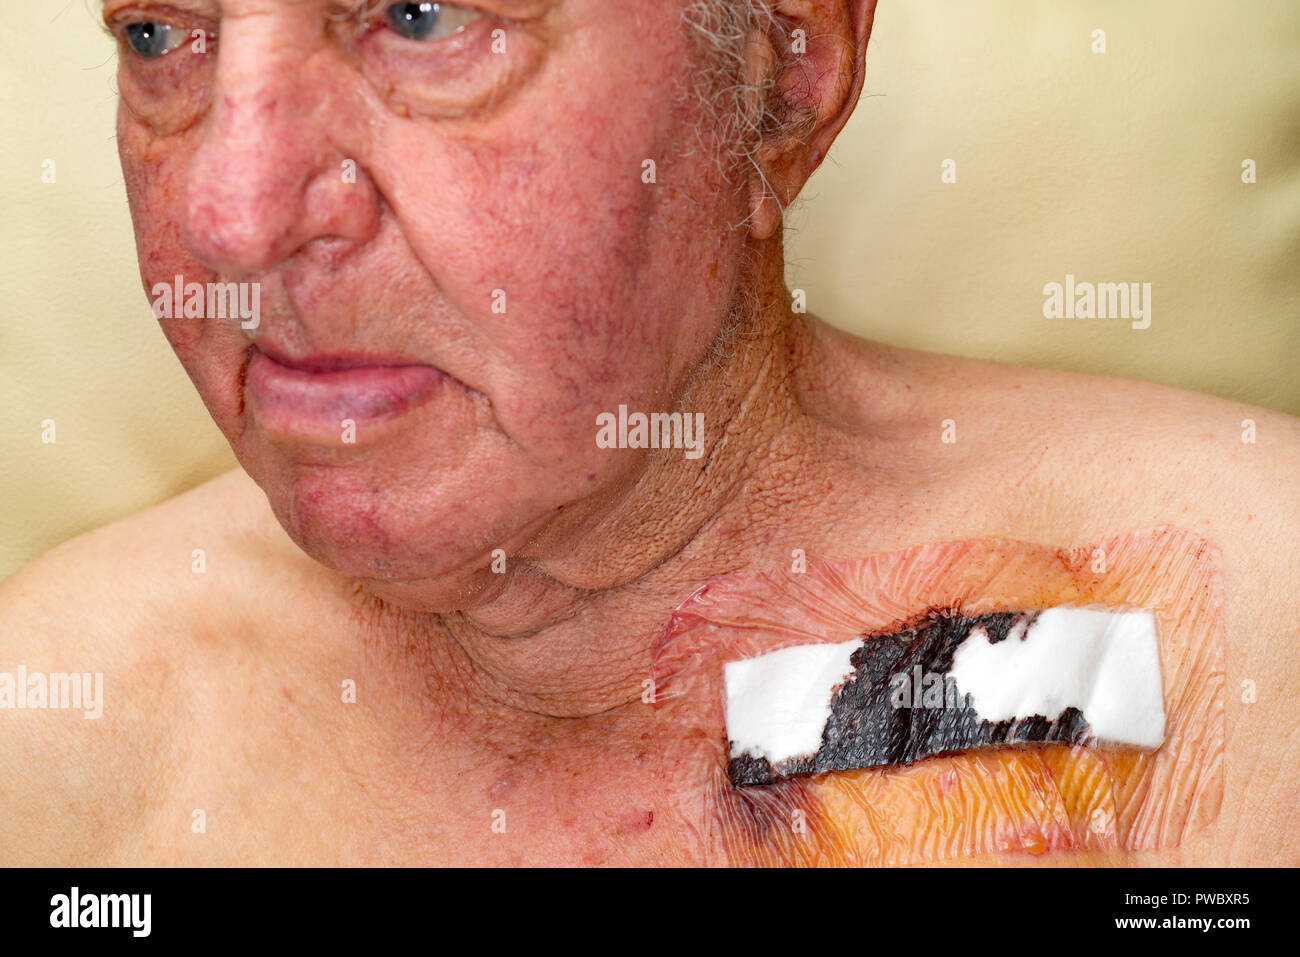 Hombre recuperándose después de haber instalado un marcapasos. Foto de stock